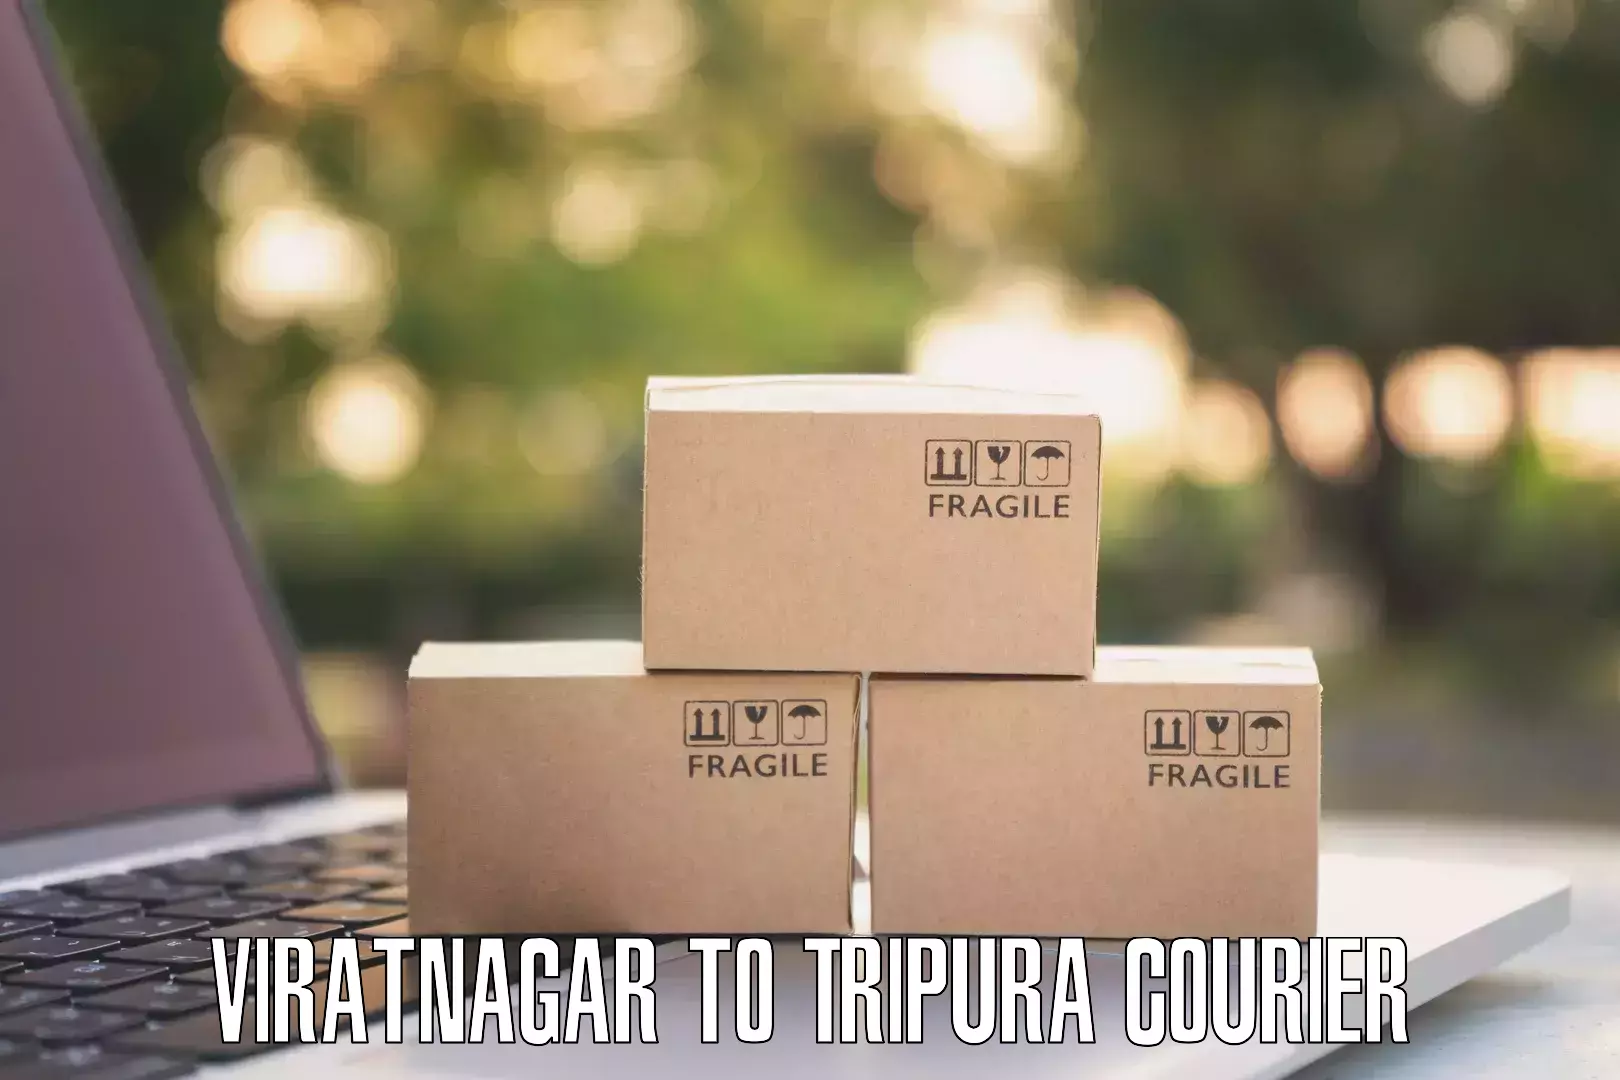 Express courier capabilities Viratnagar to Dharmanagar